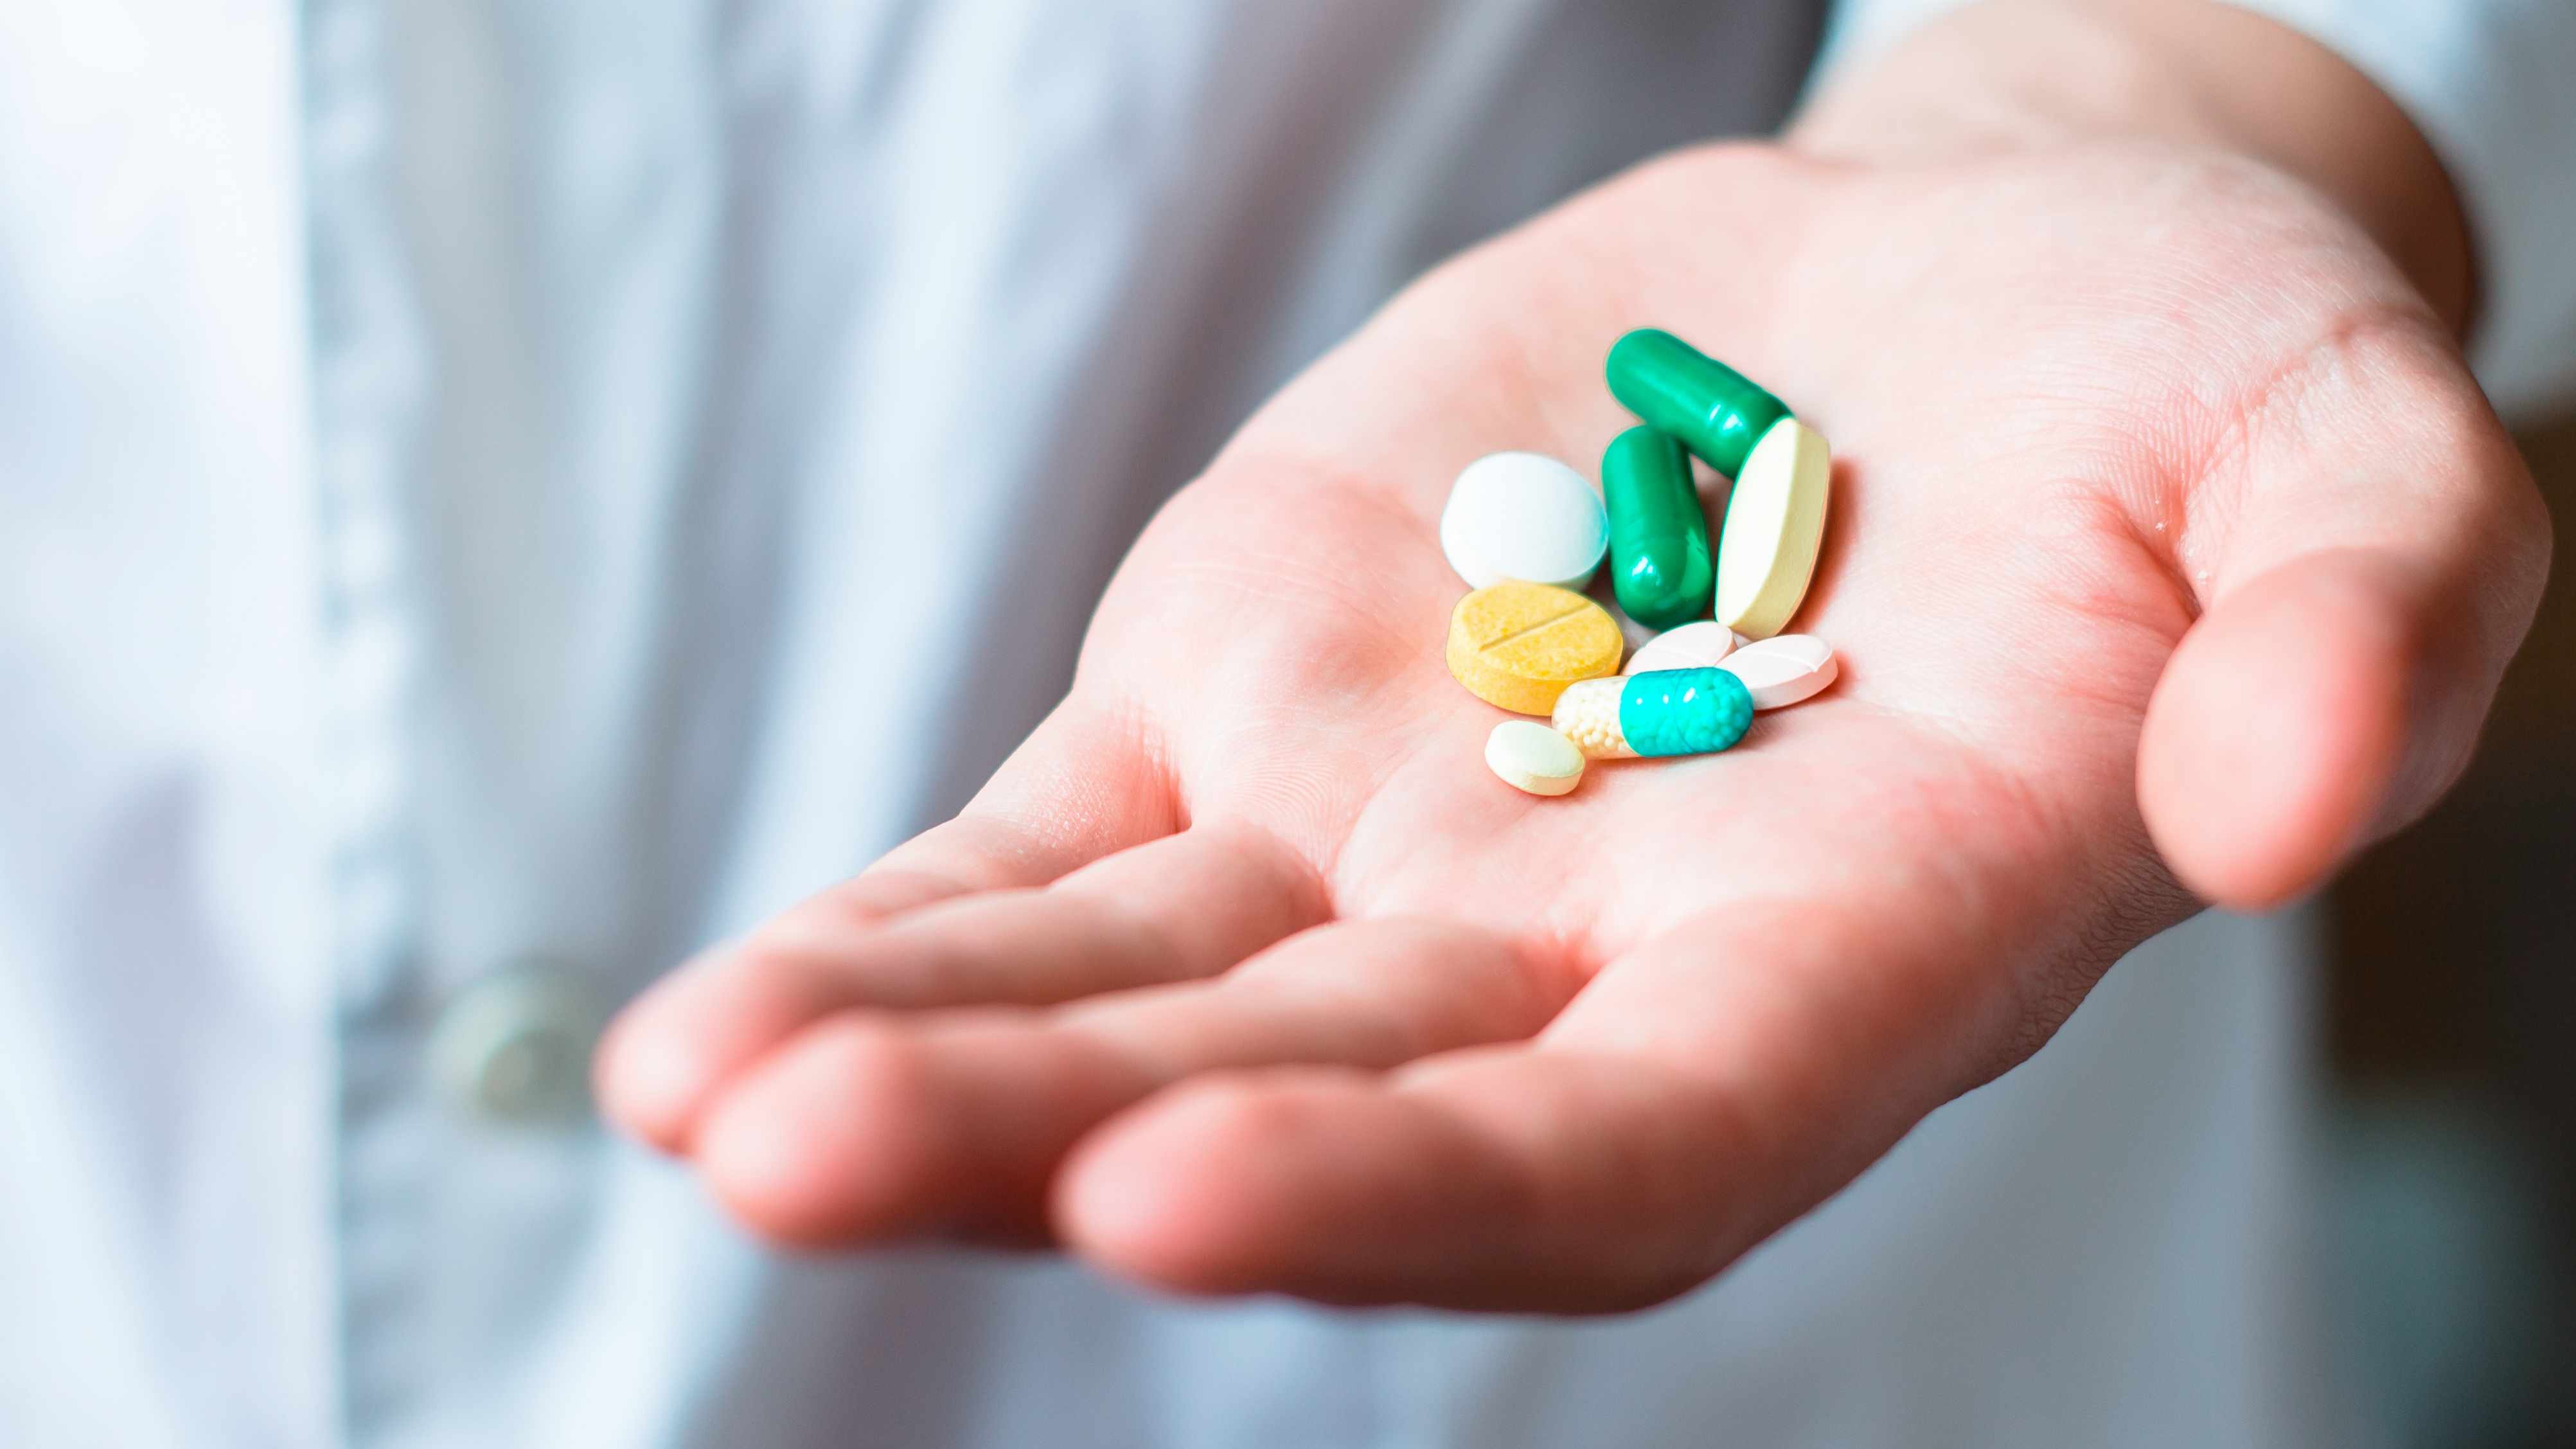 a person's hand full of medicine pills, prescription tablets, vitamins